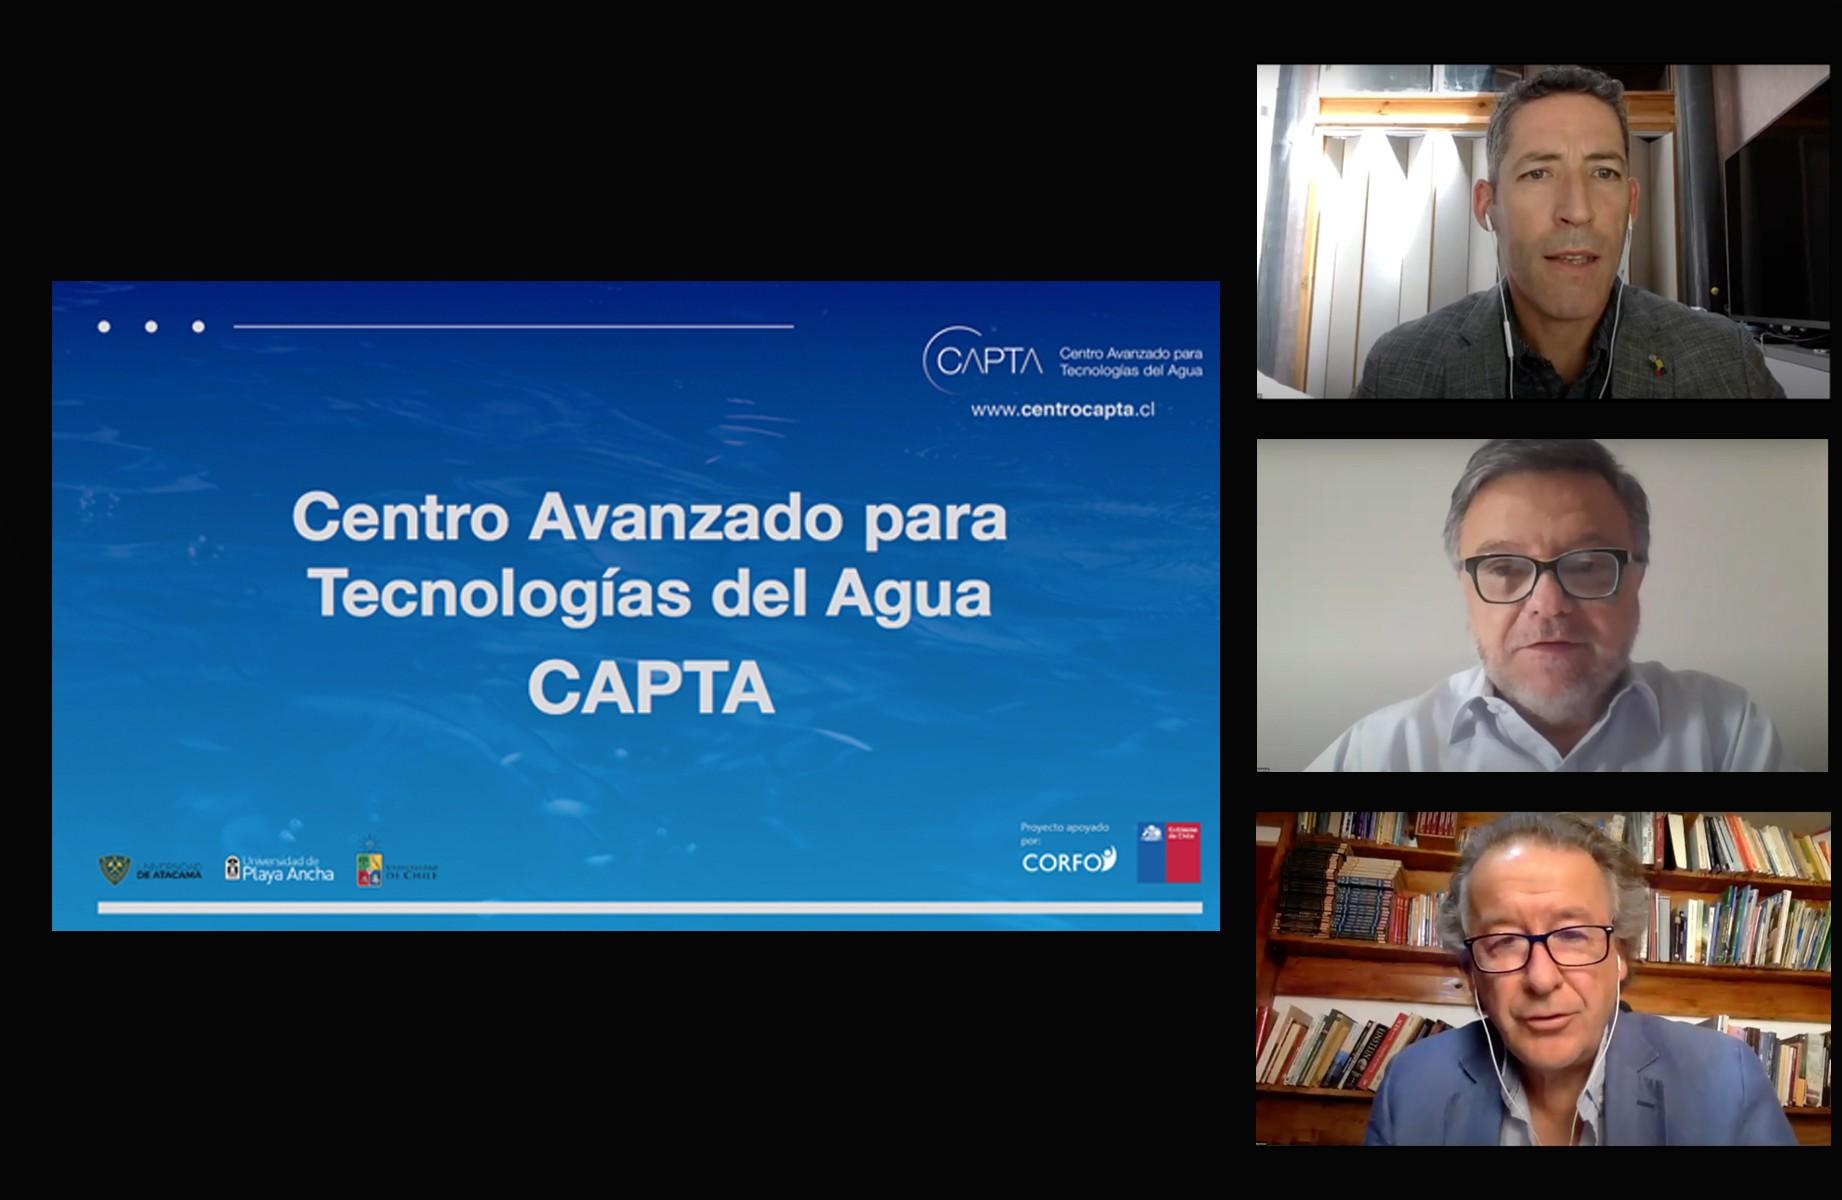 CAPTA es un consorcio tecnológico dedicado a la innovación en recursos hídricos, que cuenta con el apoyo de CORFO y la participación de Anglo American, Wiseconn y Sacyr.